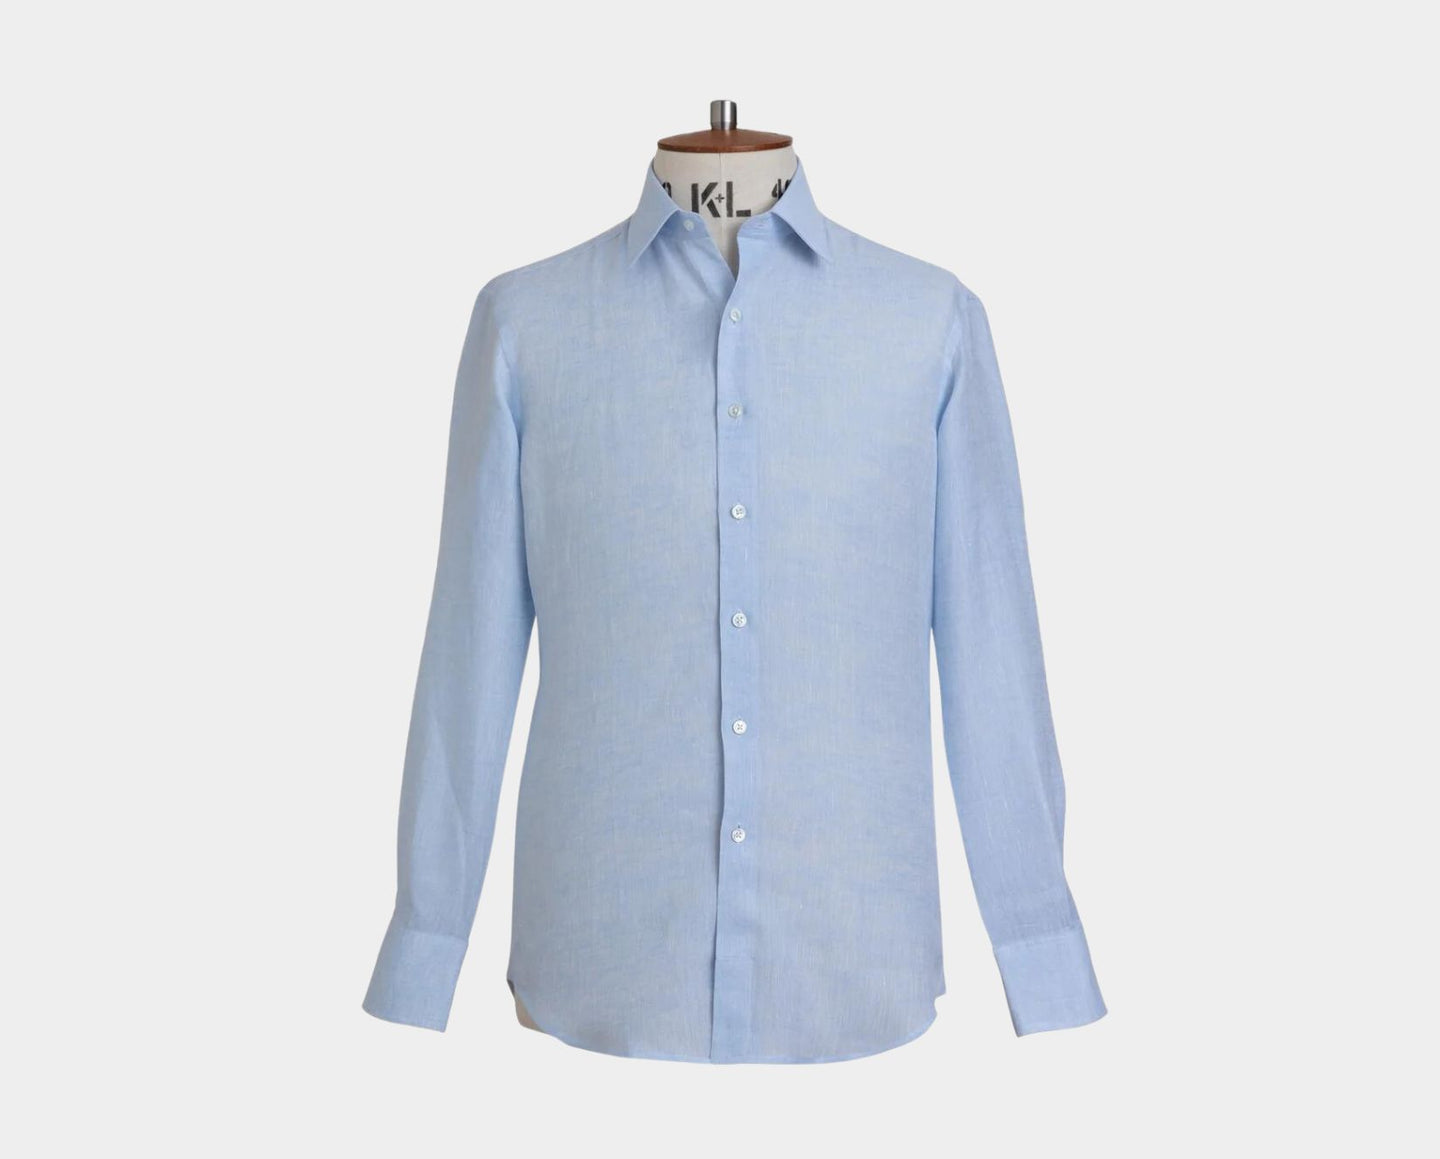 Pale Blue Linen Shirt